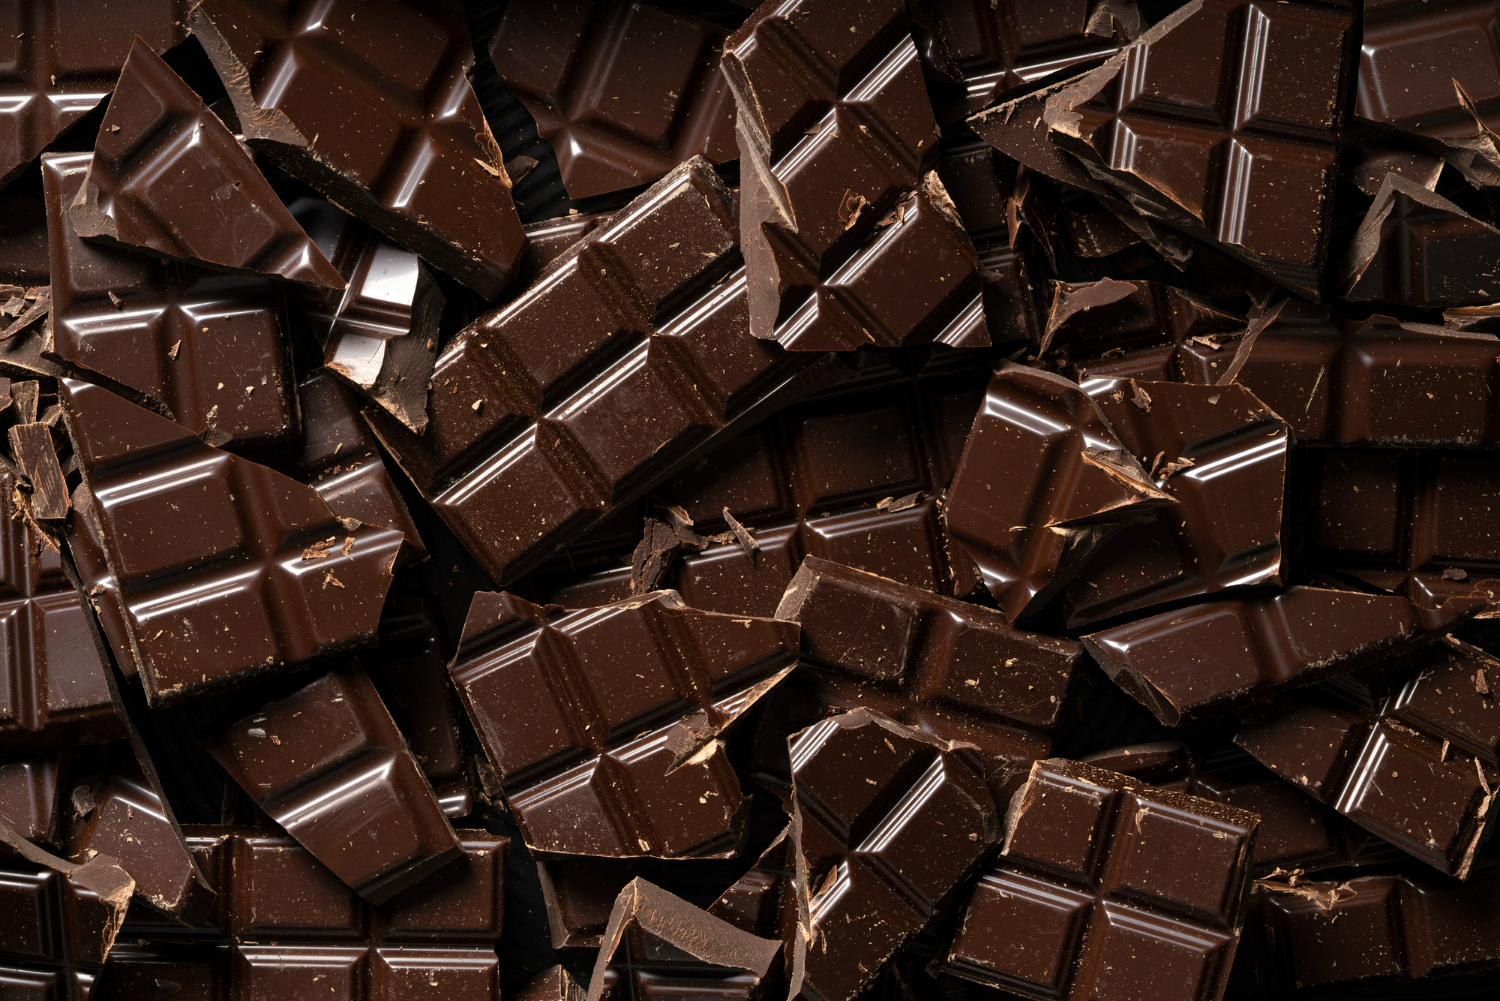 É possível comer chocolate de forma saudável Nutricionista responde